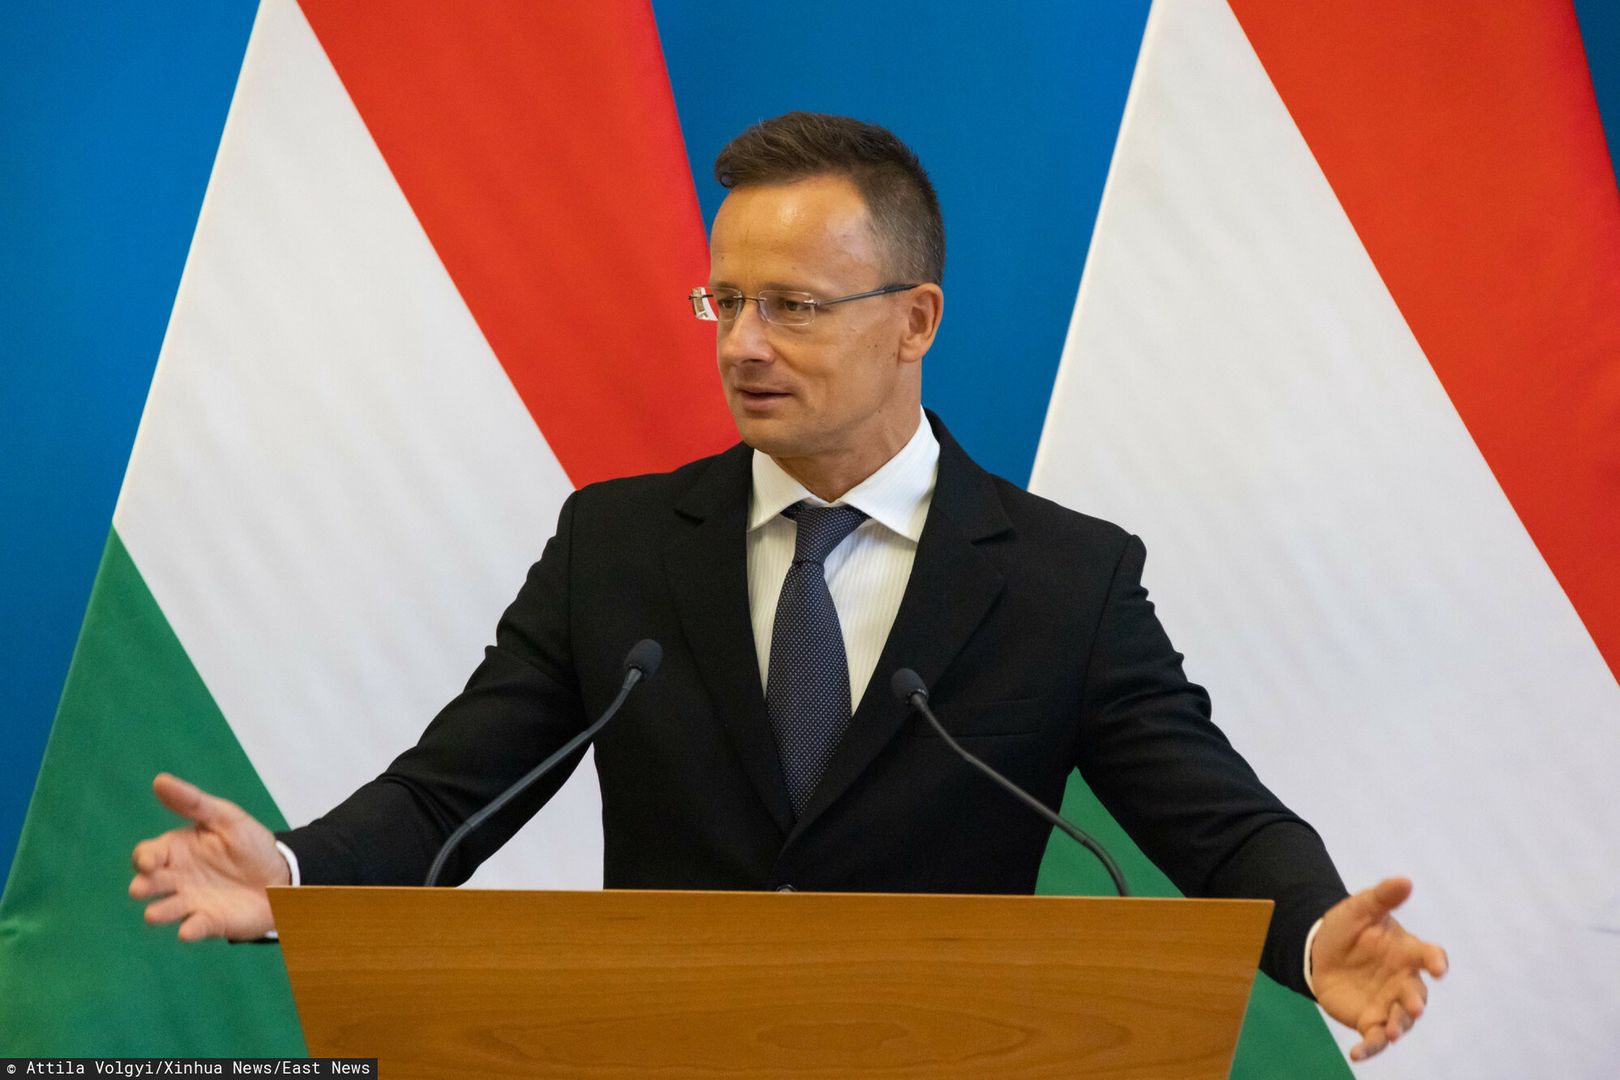 Węgrzy chwalą się współpracą z Rosją. "Przebiega bez zakłóceń"